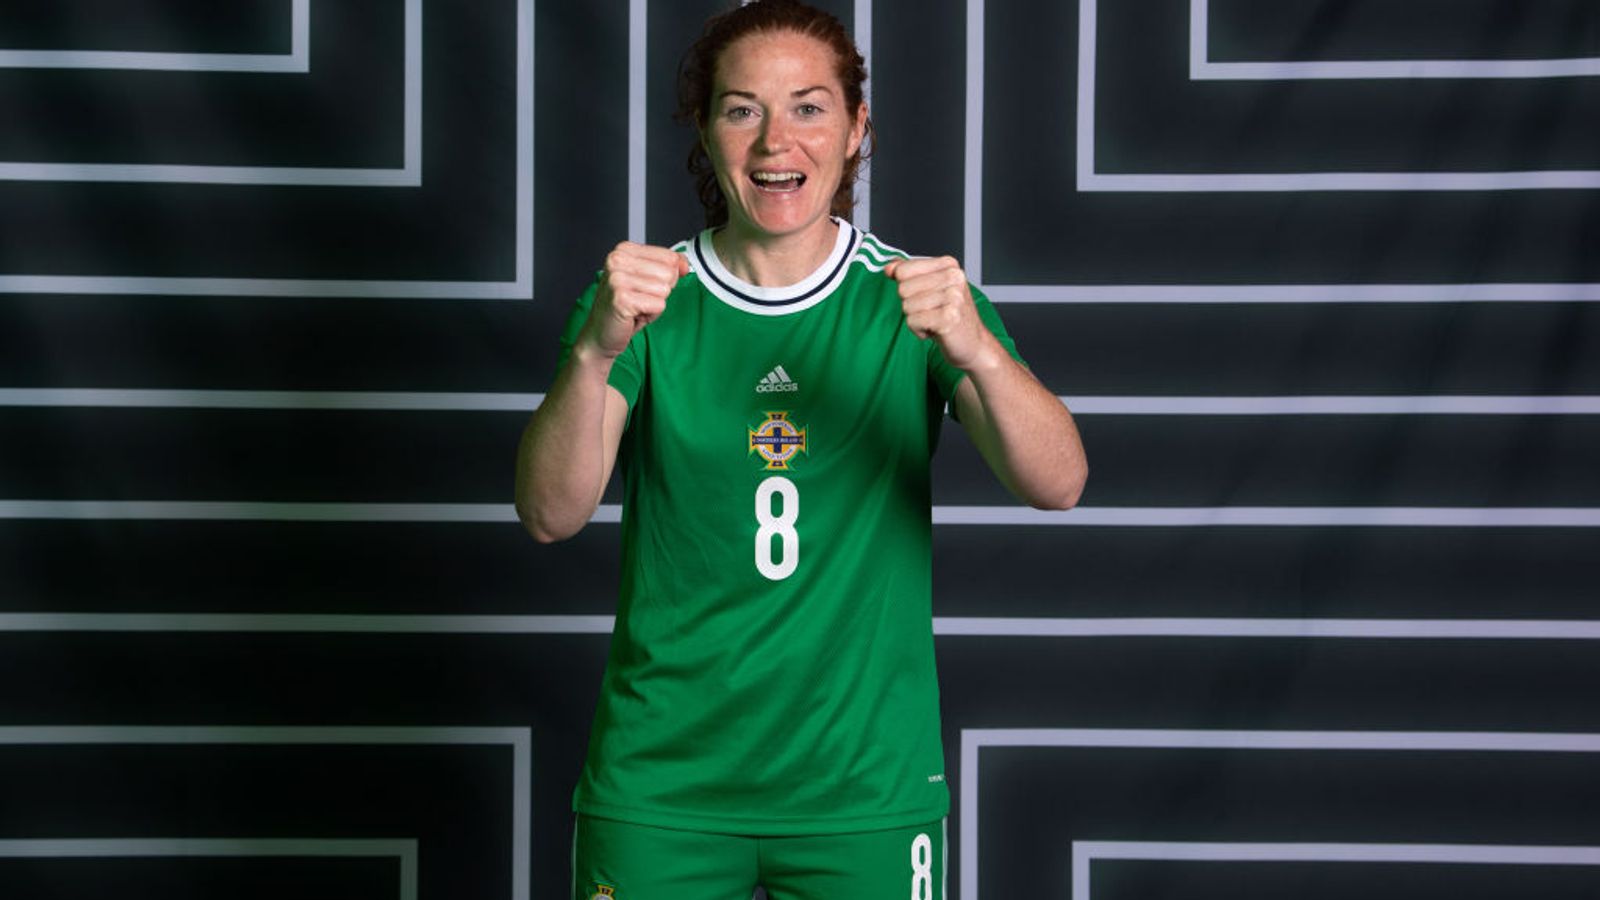 Anúncio do elenco da Irlanda do Norte Euro 2022: capitã Marissa Callaghan e Ashley Hutton fazem a seleção final |  notícias de futebol